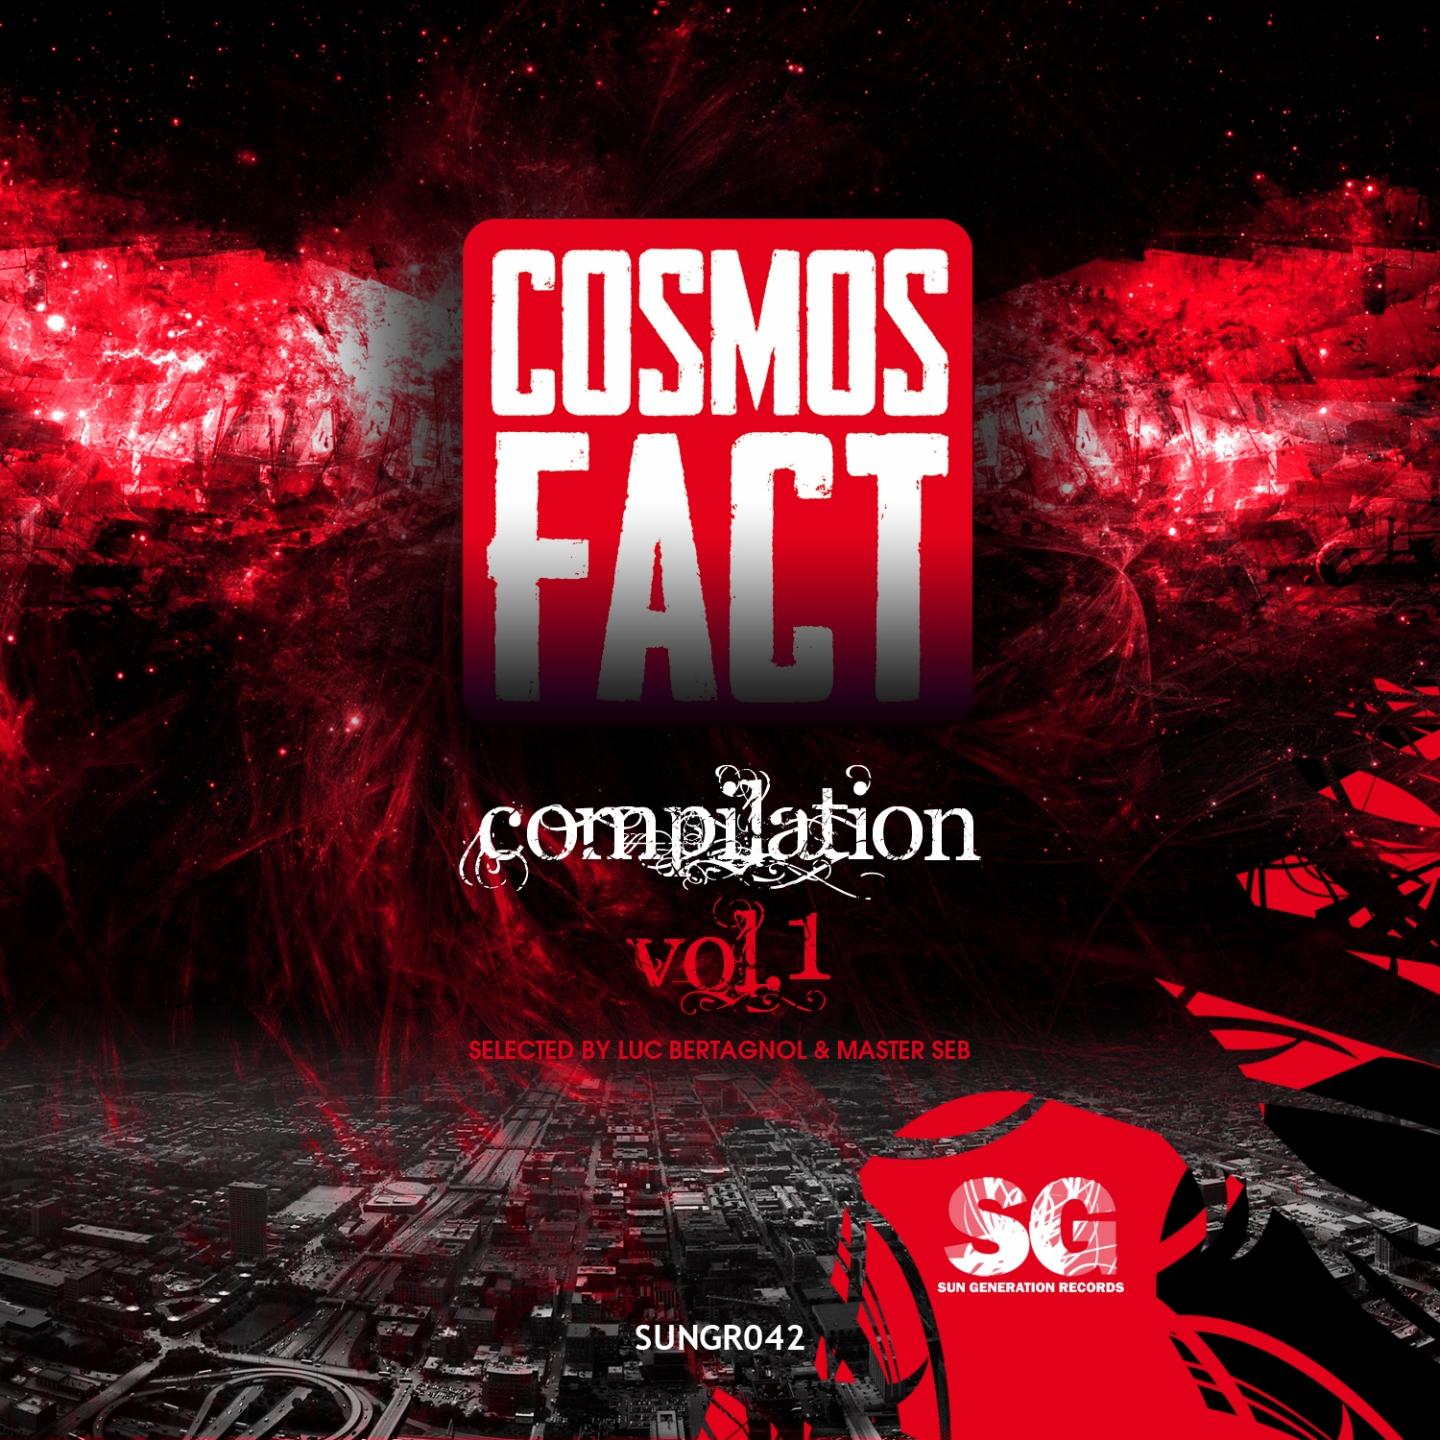 Cosmos Fact, Vol. 1